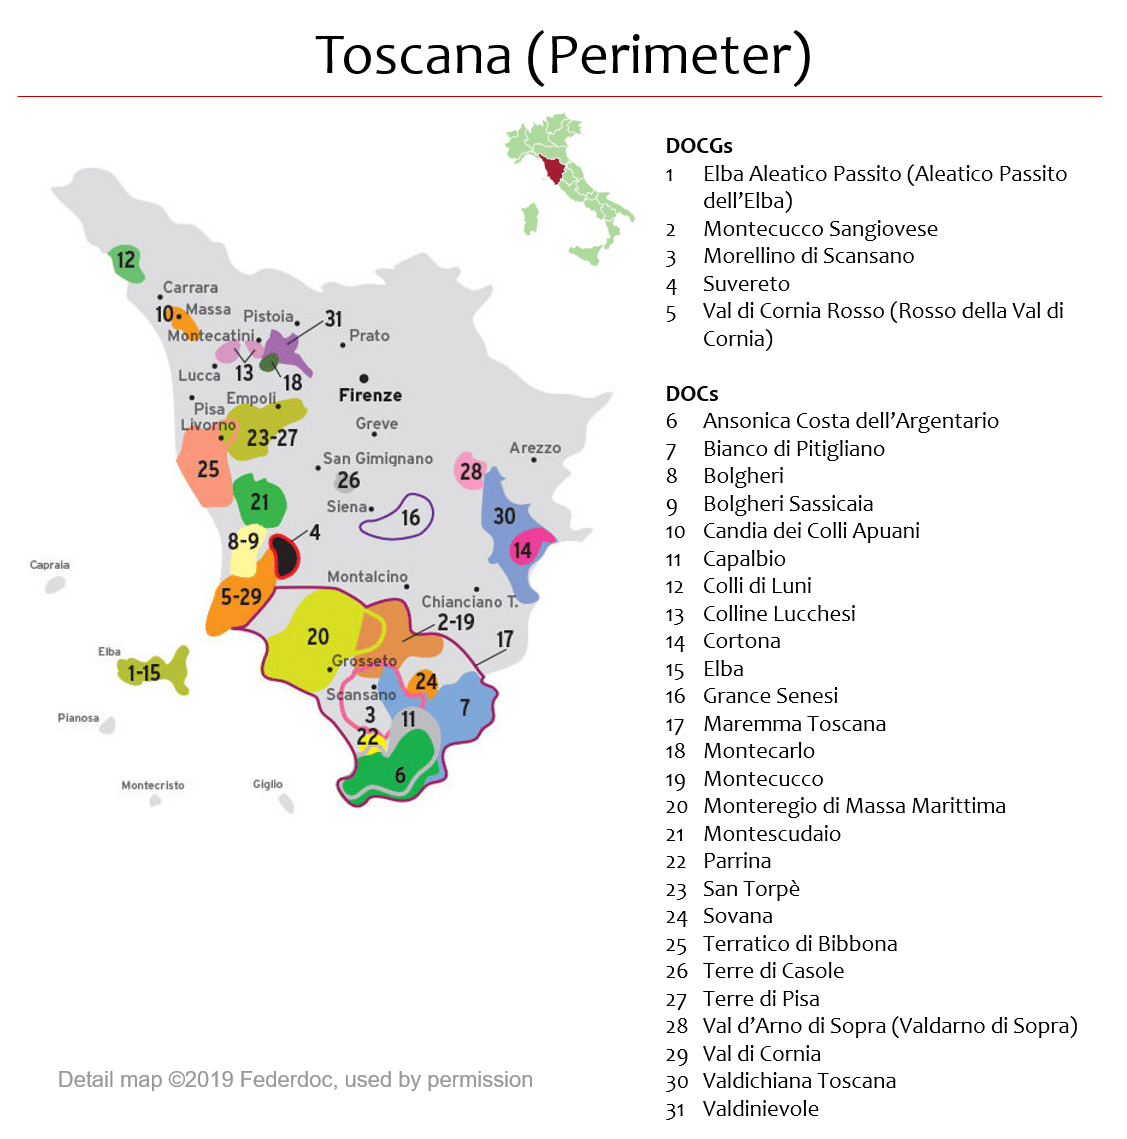 https://cdn-5fd7a913c1ac1813f431d614.closte.com/wp-content/uploads/Toscana-perimeter.png